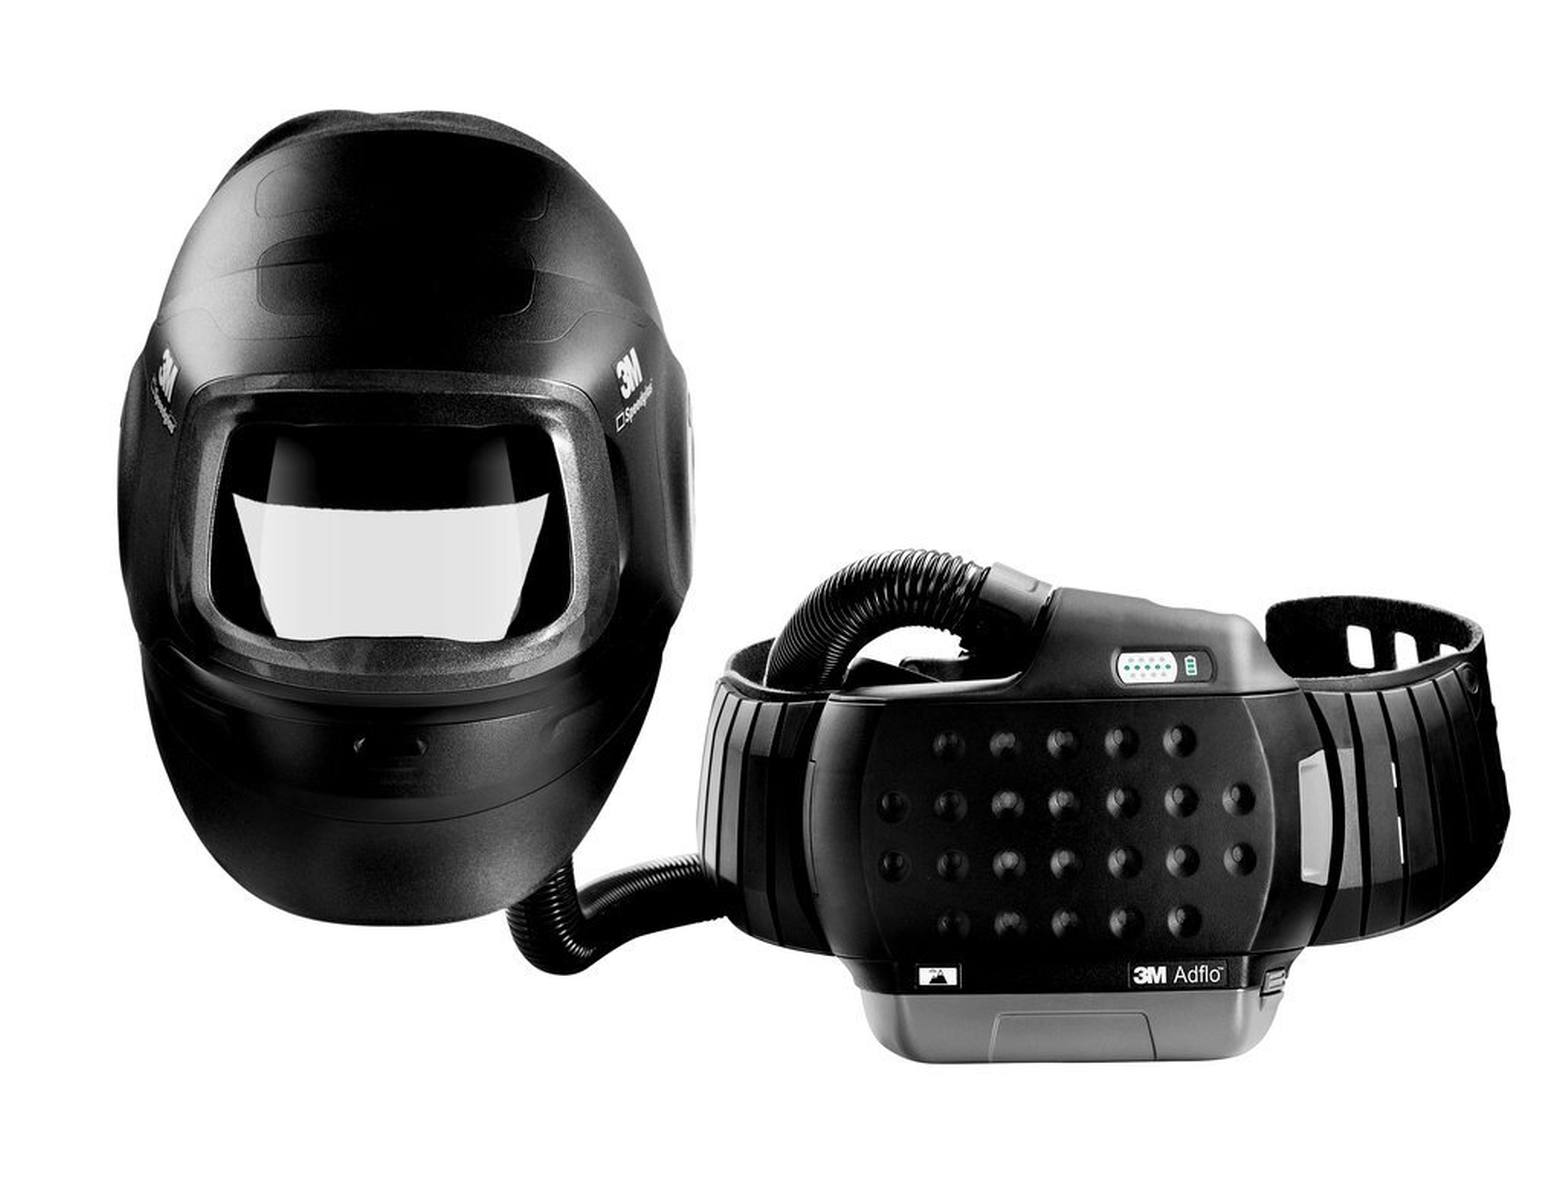 Maschera per saldatura ad alte prestazioni 3M Speedglas G5-01 con respiratore 3M Adflo, batteria ad alte prestazioni, set di avviamento dei materiali di consumo e borsa di stoccaggio, senza filtro per saldatura, H617809